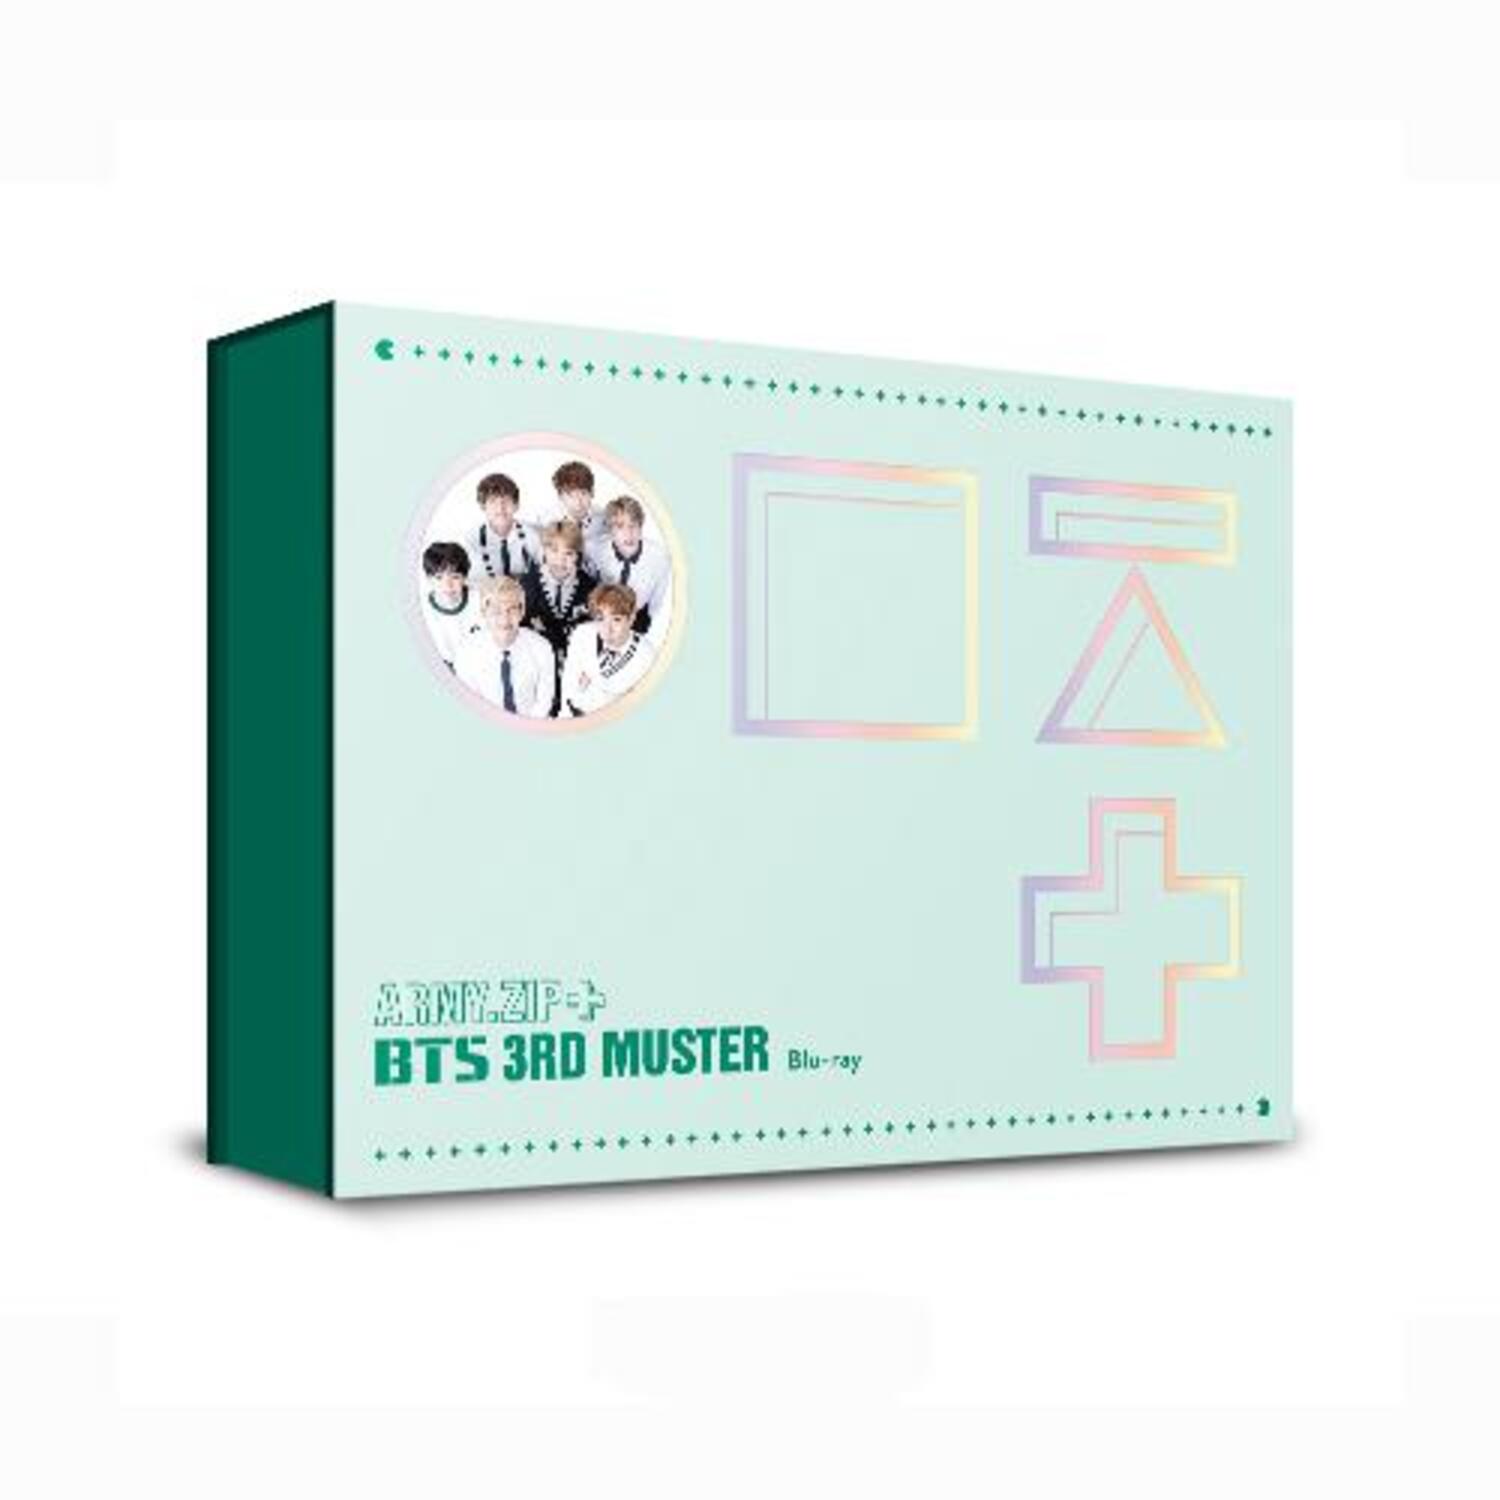 방탄소년단(BTS) - BTS 3rd MUSTER [ARMY.ZIP+] Blu-ray (초도한정-고급엽서 증정!)